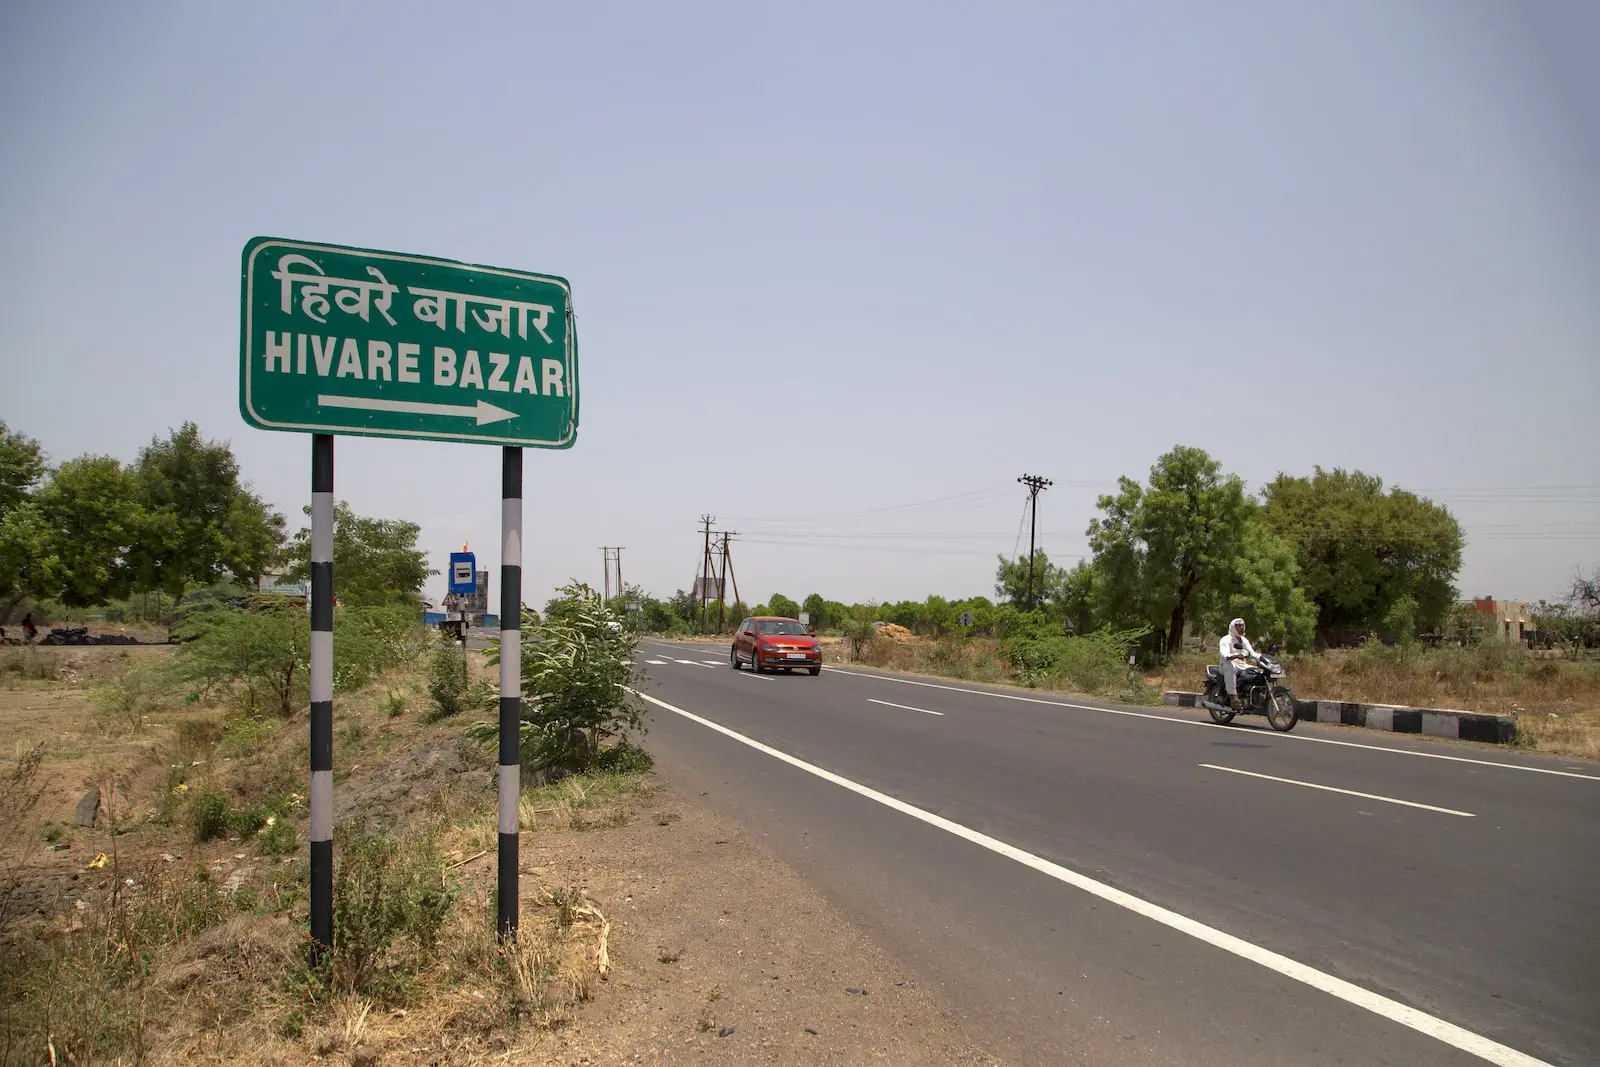 Hiware Bazar